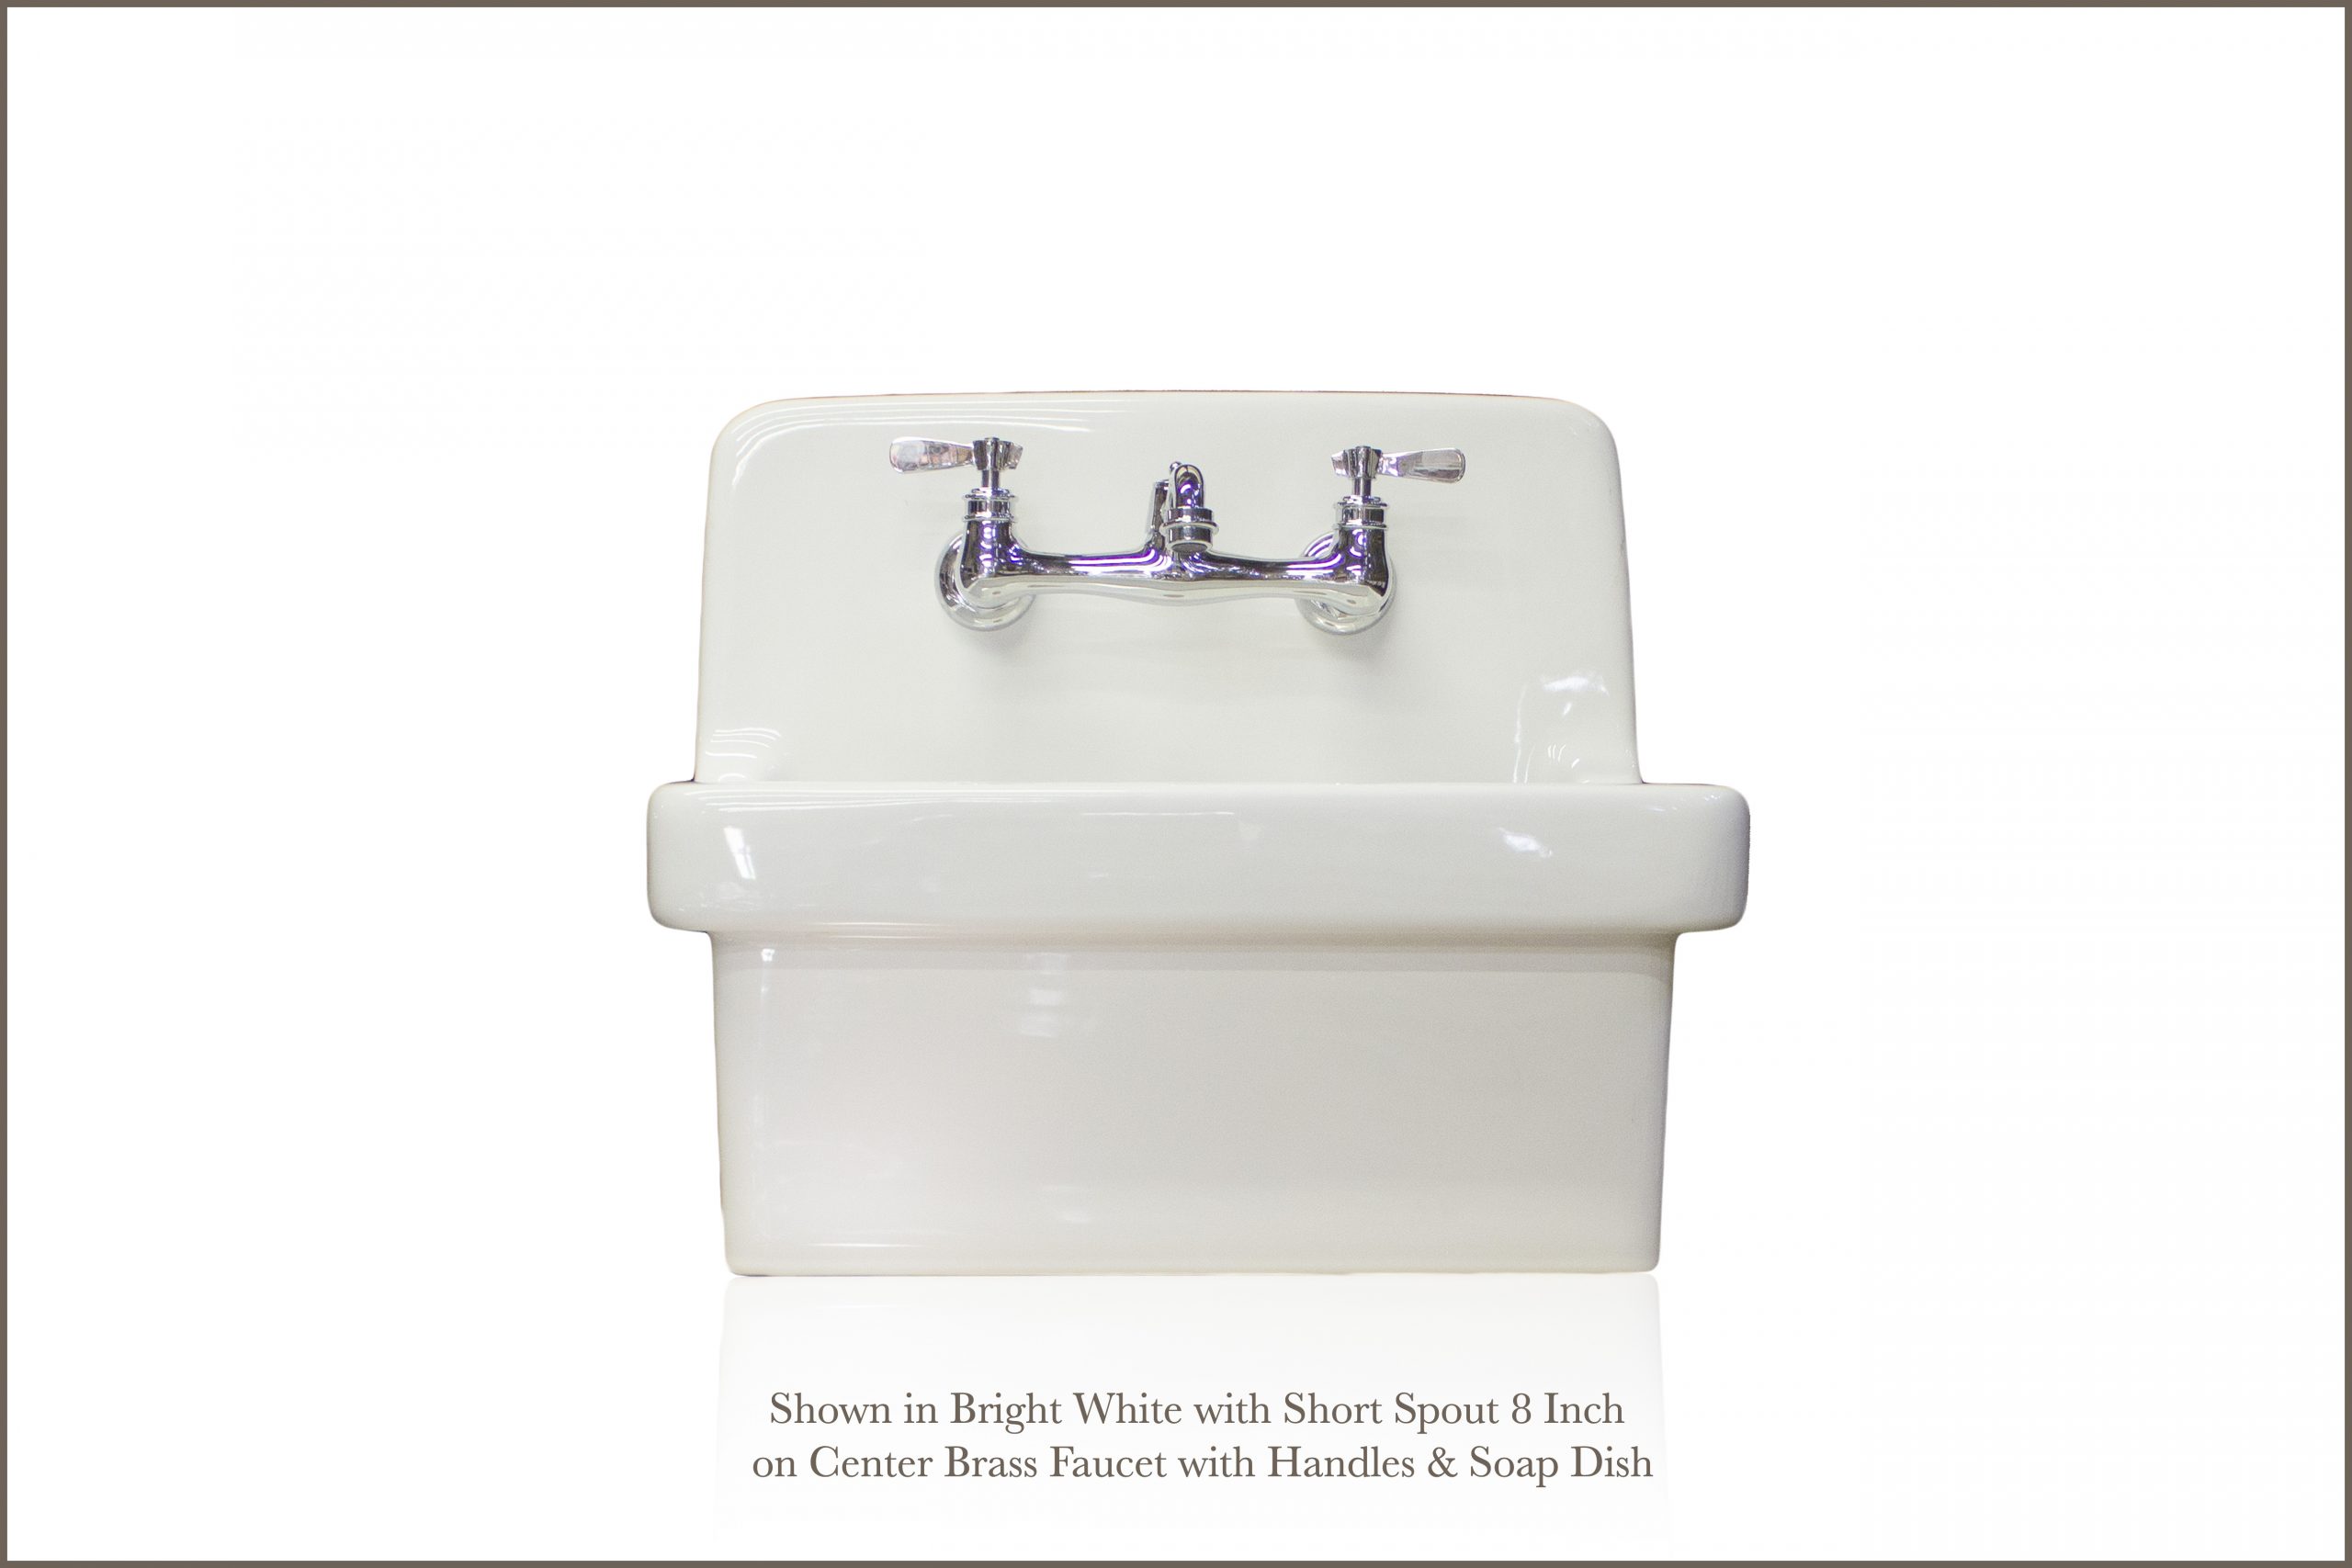 Vintage Tub & Bath 48 inch Cast Iron Wall Mount Farmhouse Trough Sink